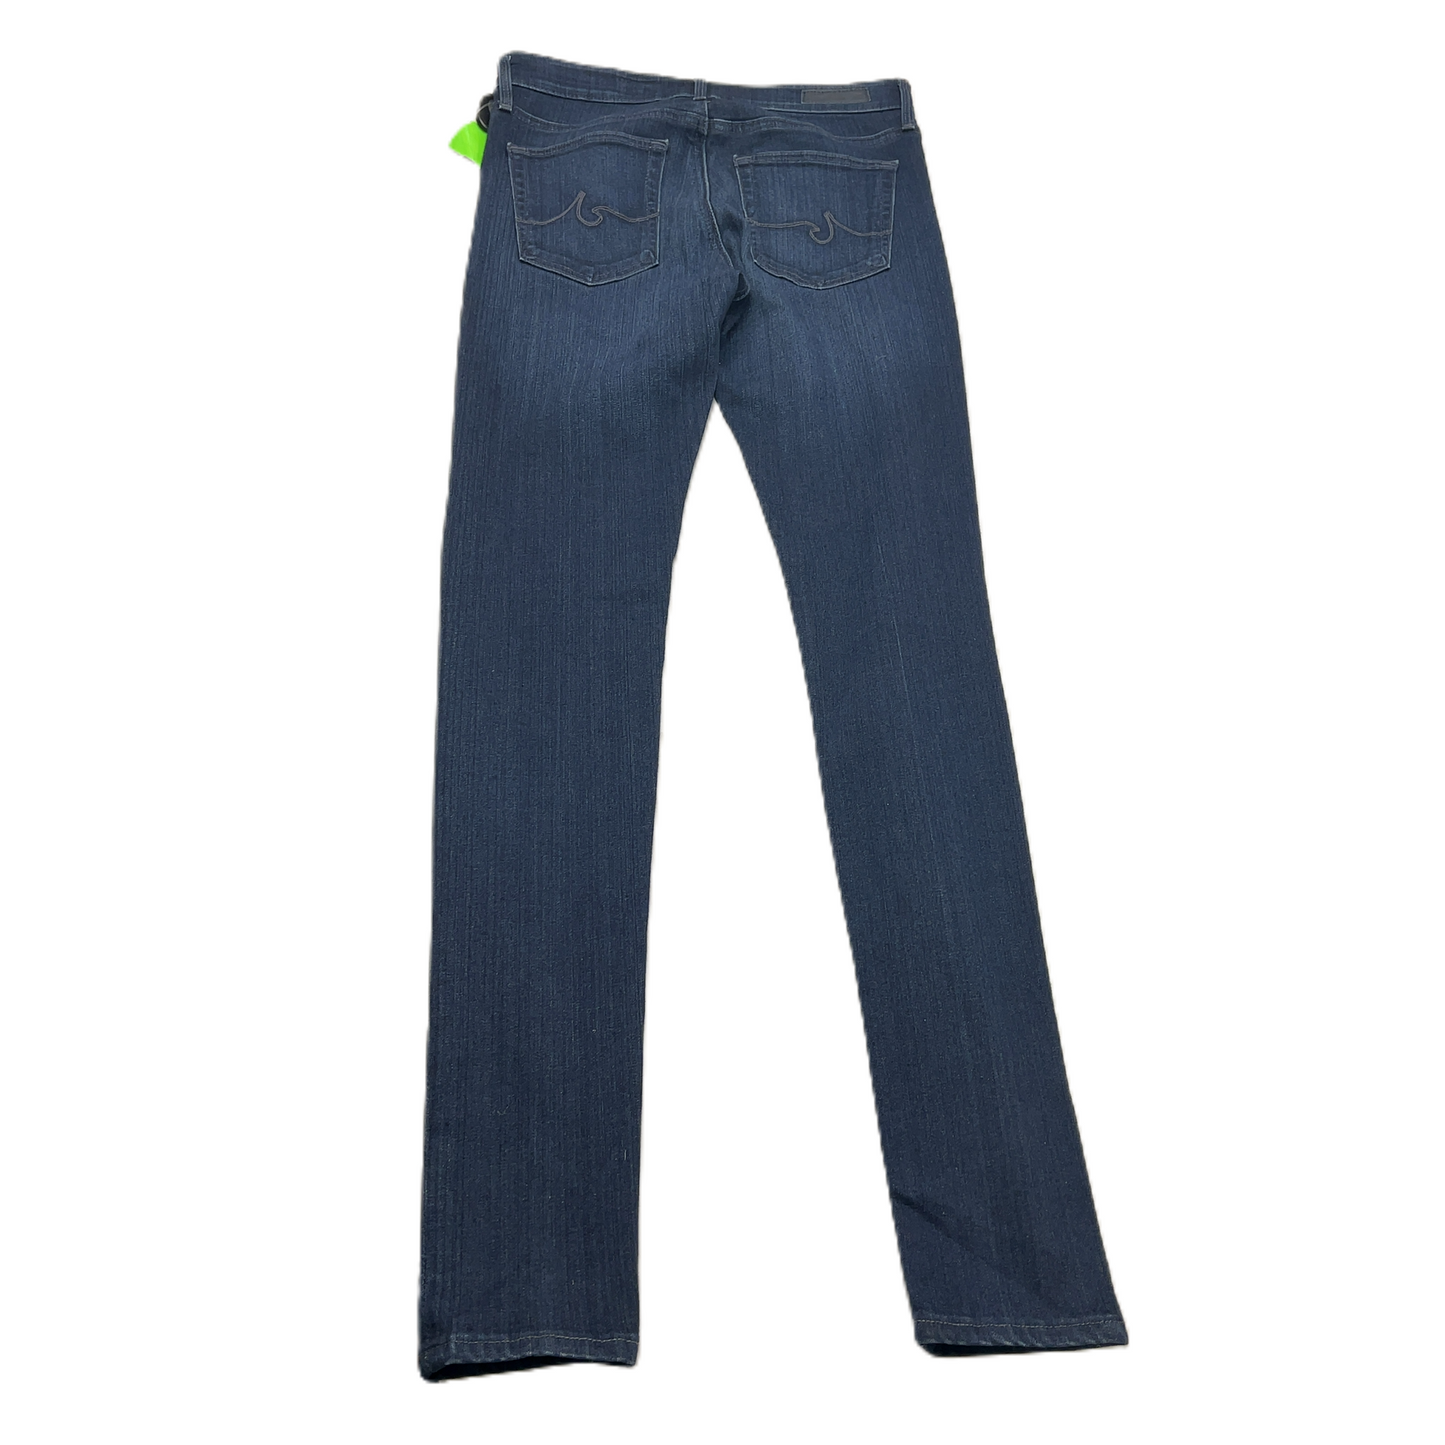 Jeans Skinny By Adriano Goldschmied  Size: 4